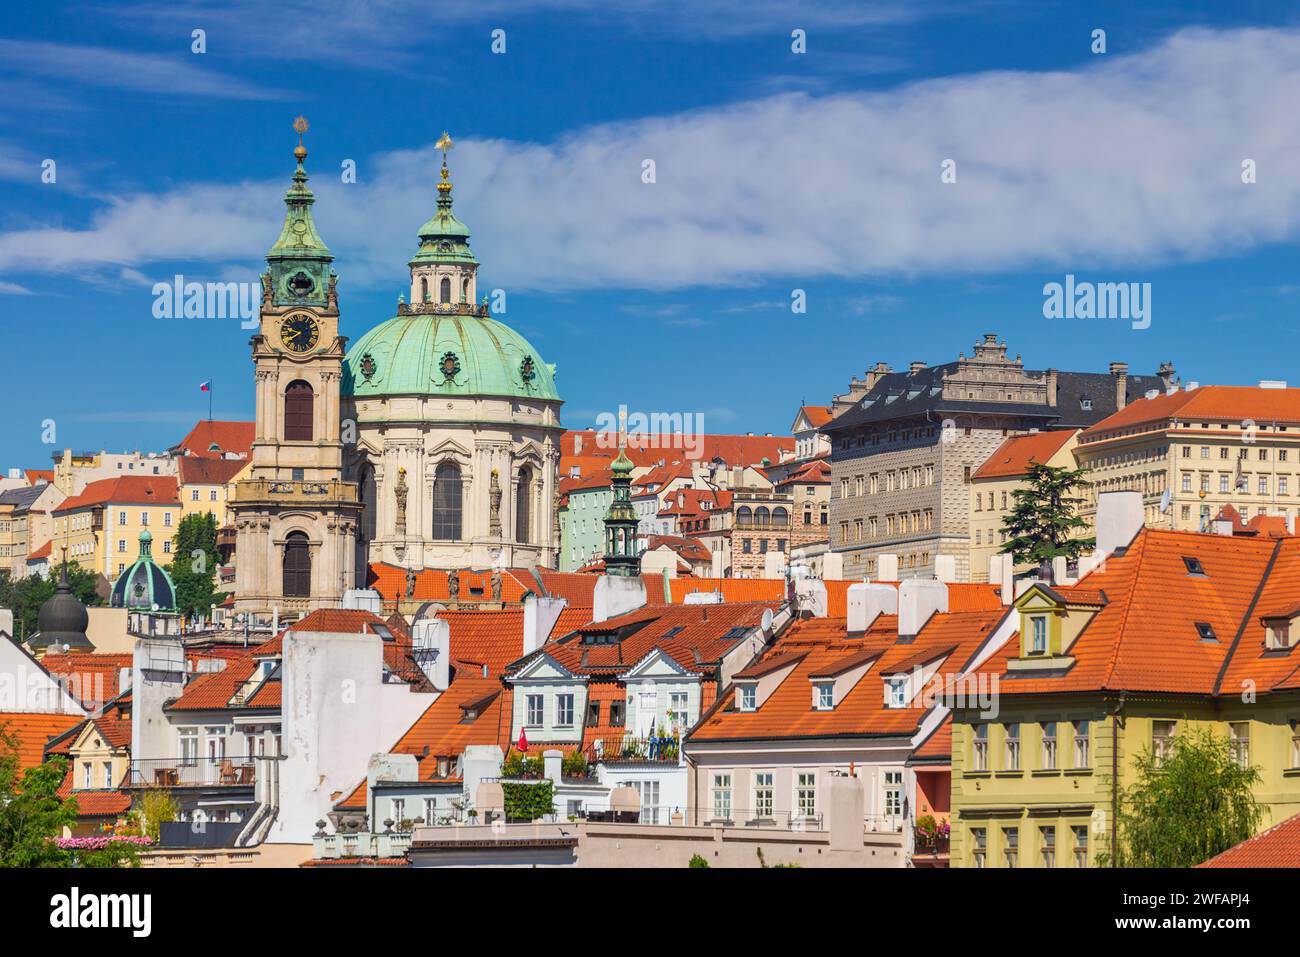 Prague République tchèque, vue à angle élevé de la ville Skyline à la vieille ville de Prague et St. Nicholas Church, Tchéquie Banque D'Images